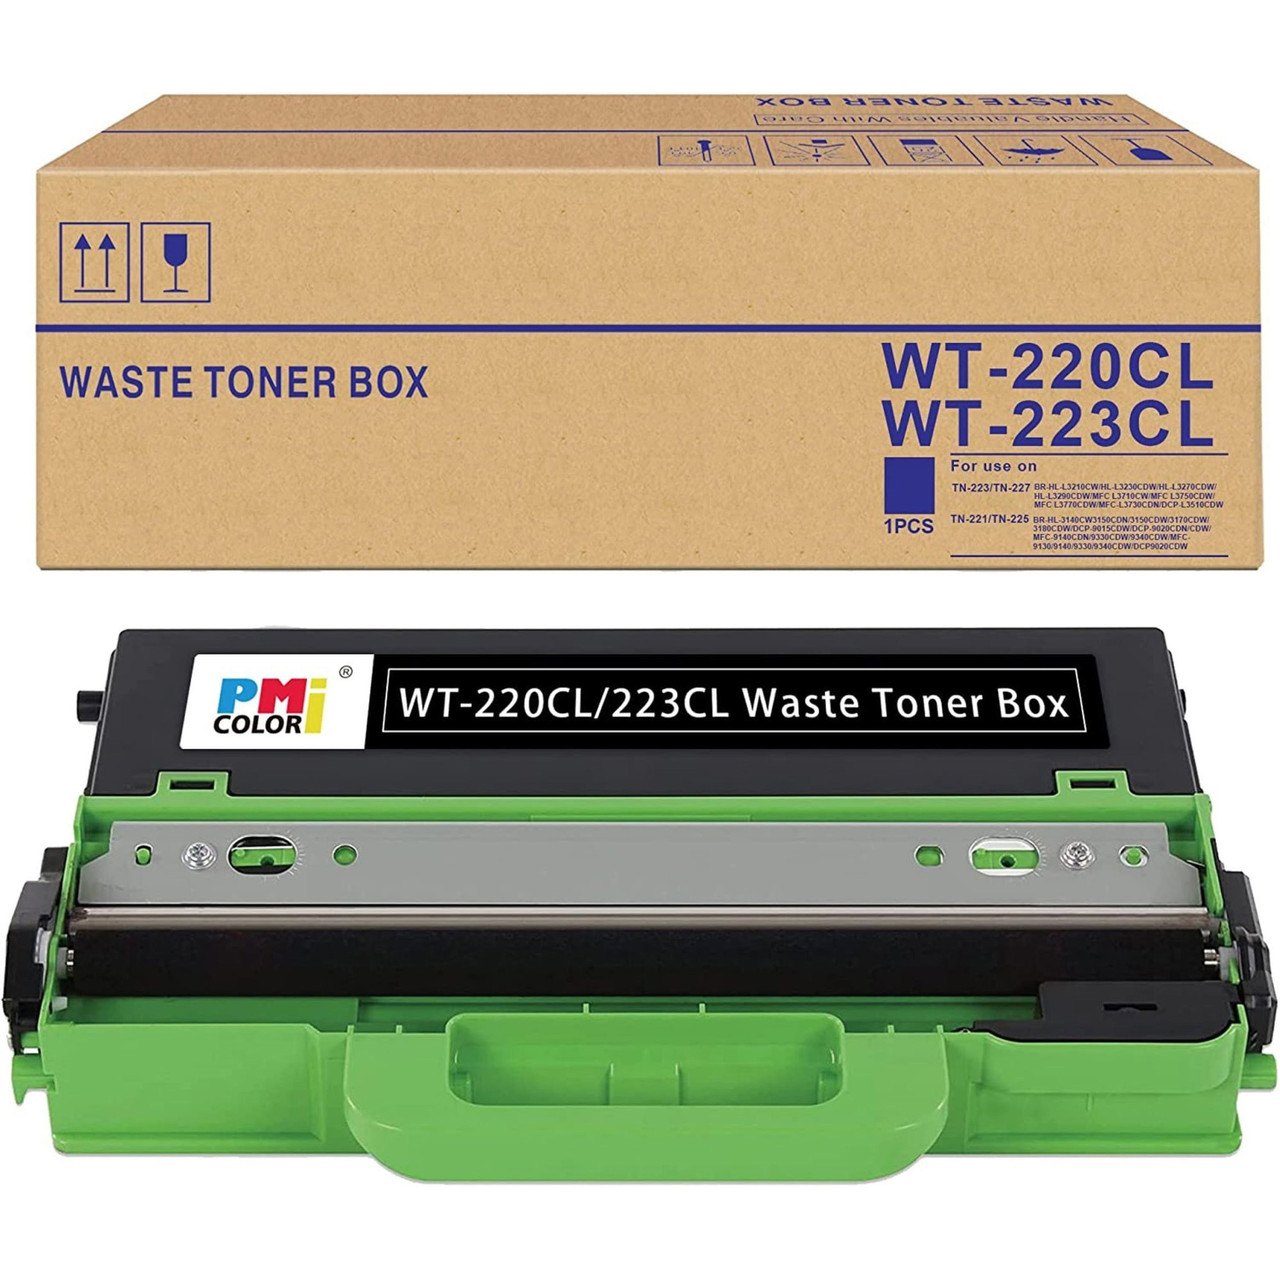 WT229CL Brother toner waste bin